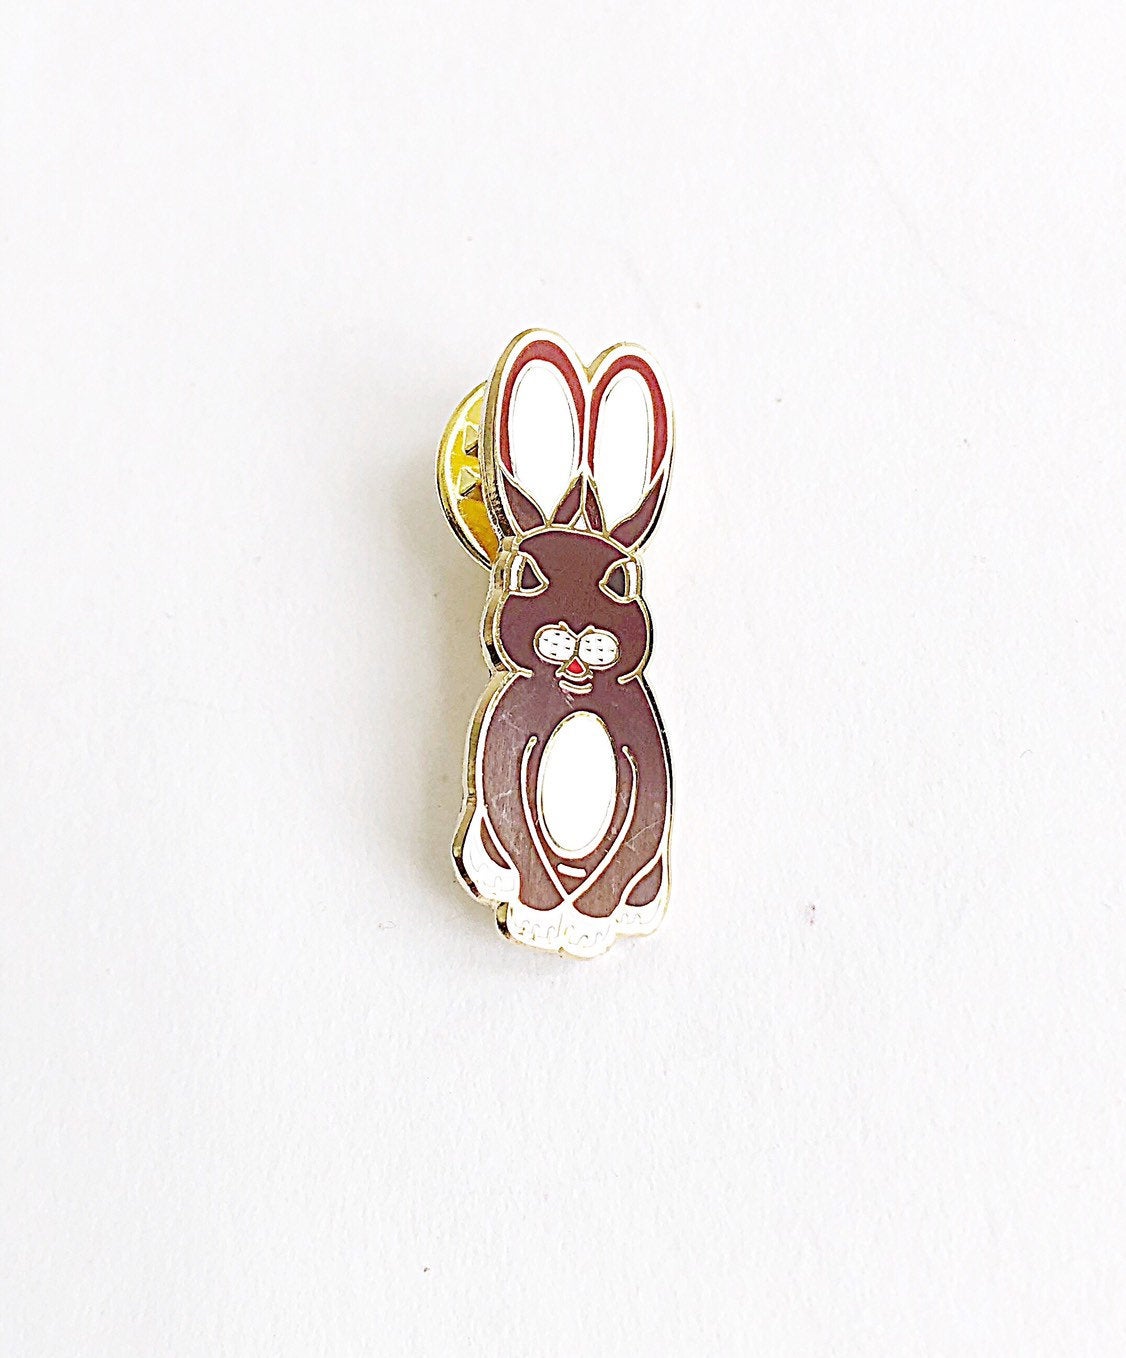 Rabbit Enamel Pin - Sitting Tim